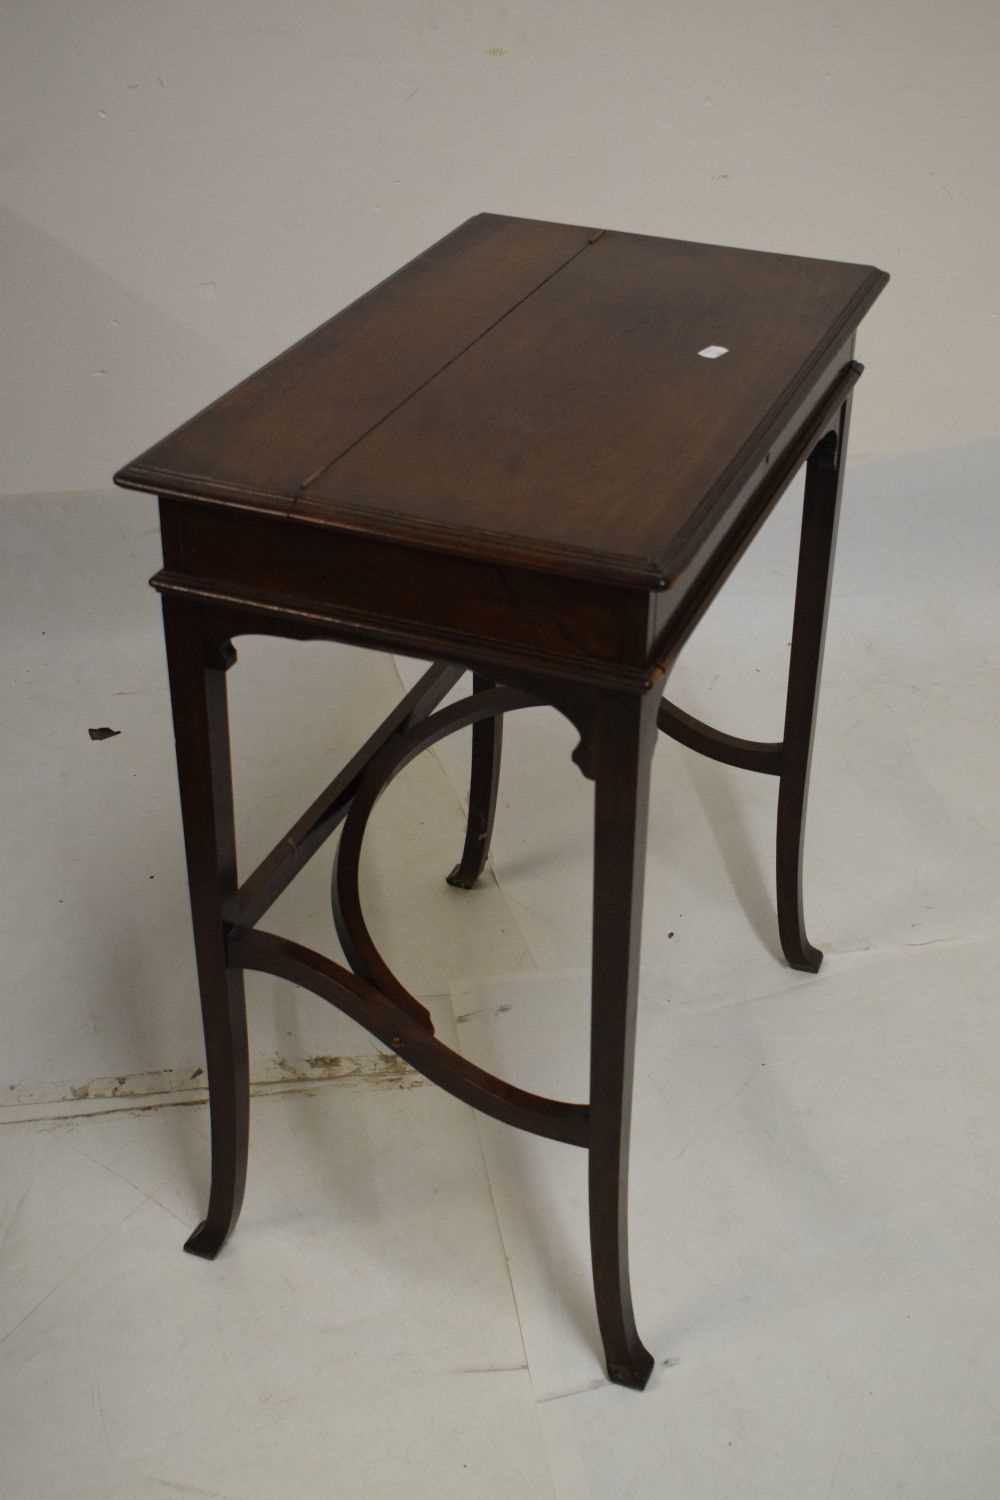 Edwardian campaign style mahogany writing desk - Image 6 of 6